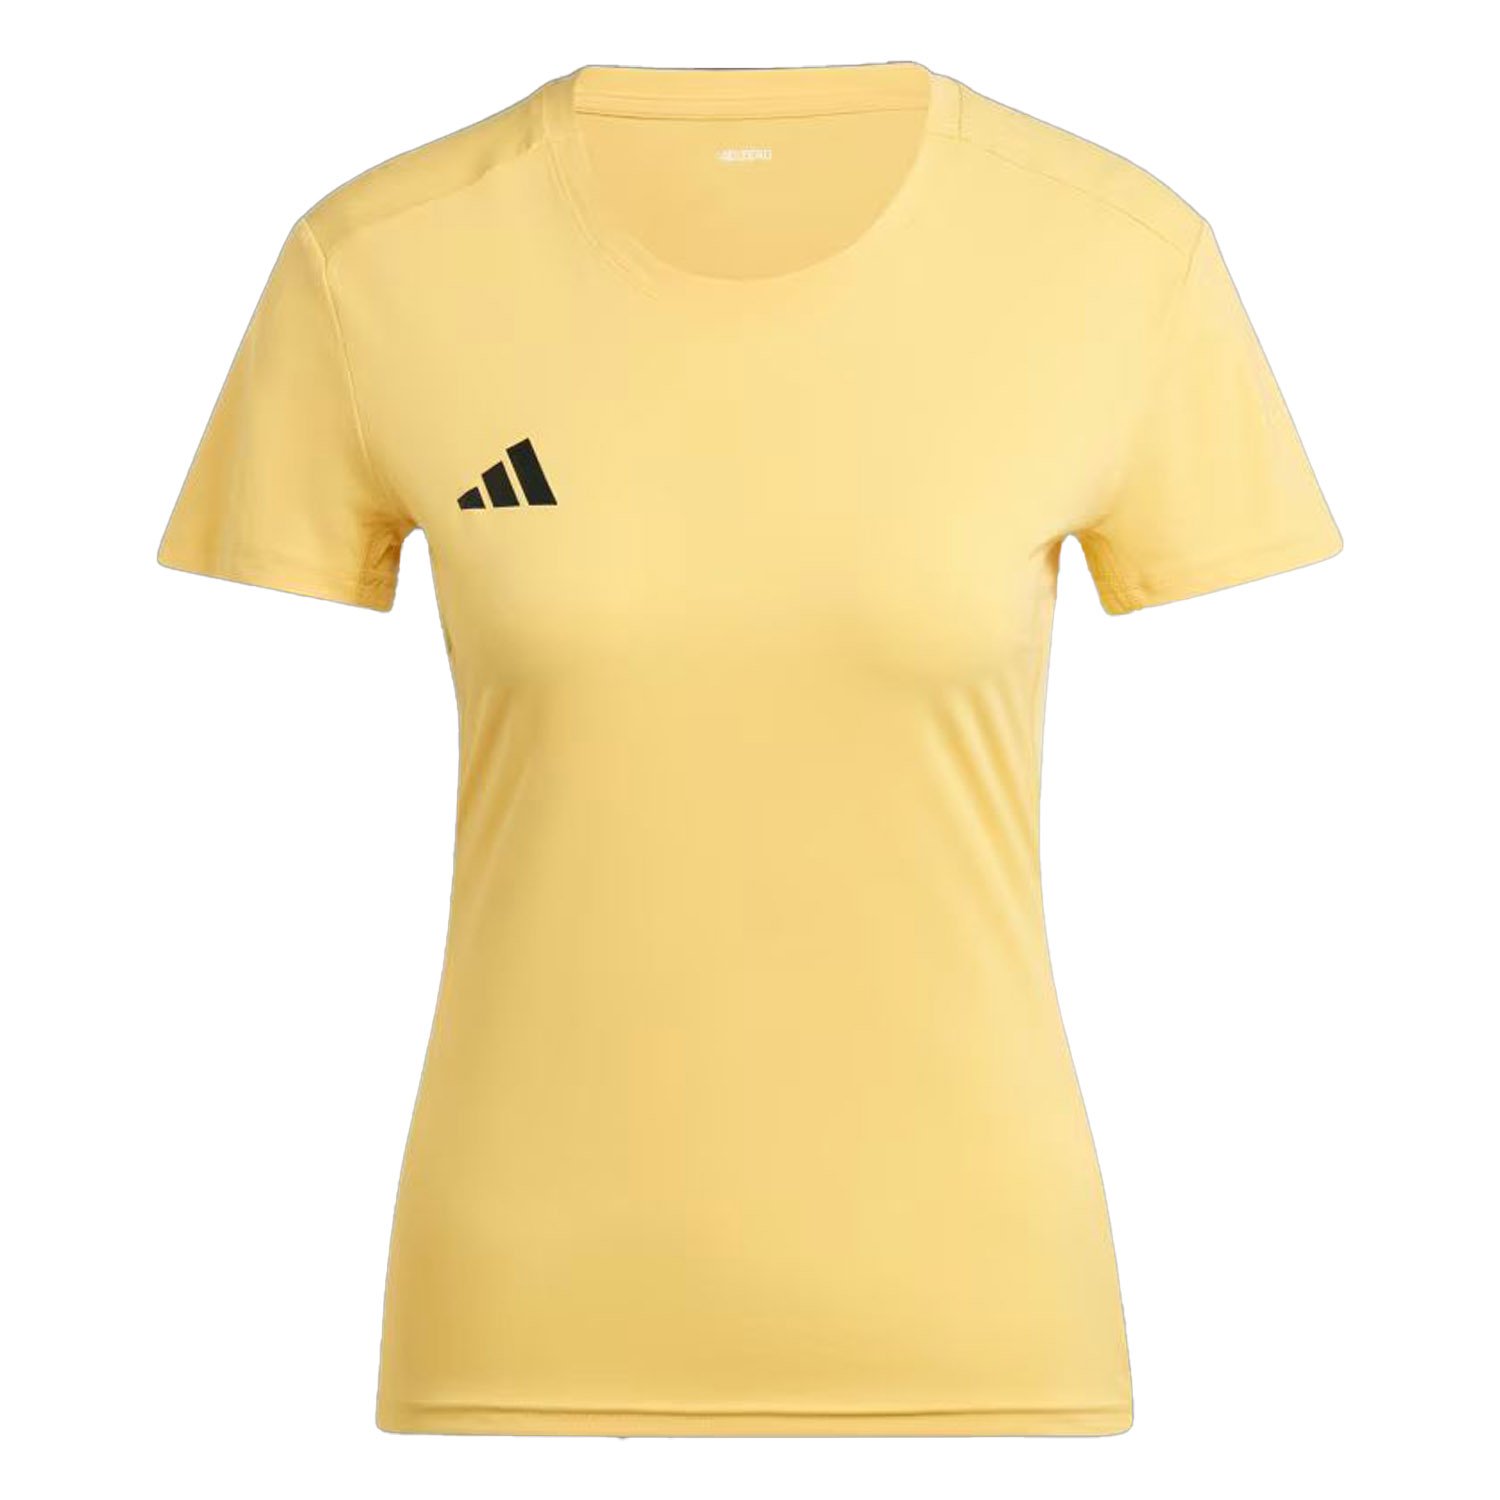 Adidas Adizero Kadın Tişört - Renkli - 1